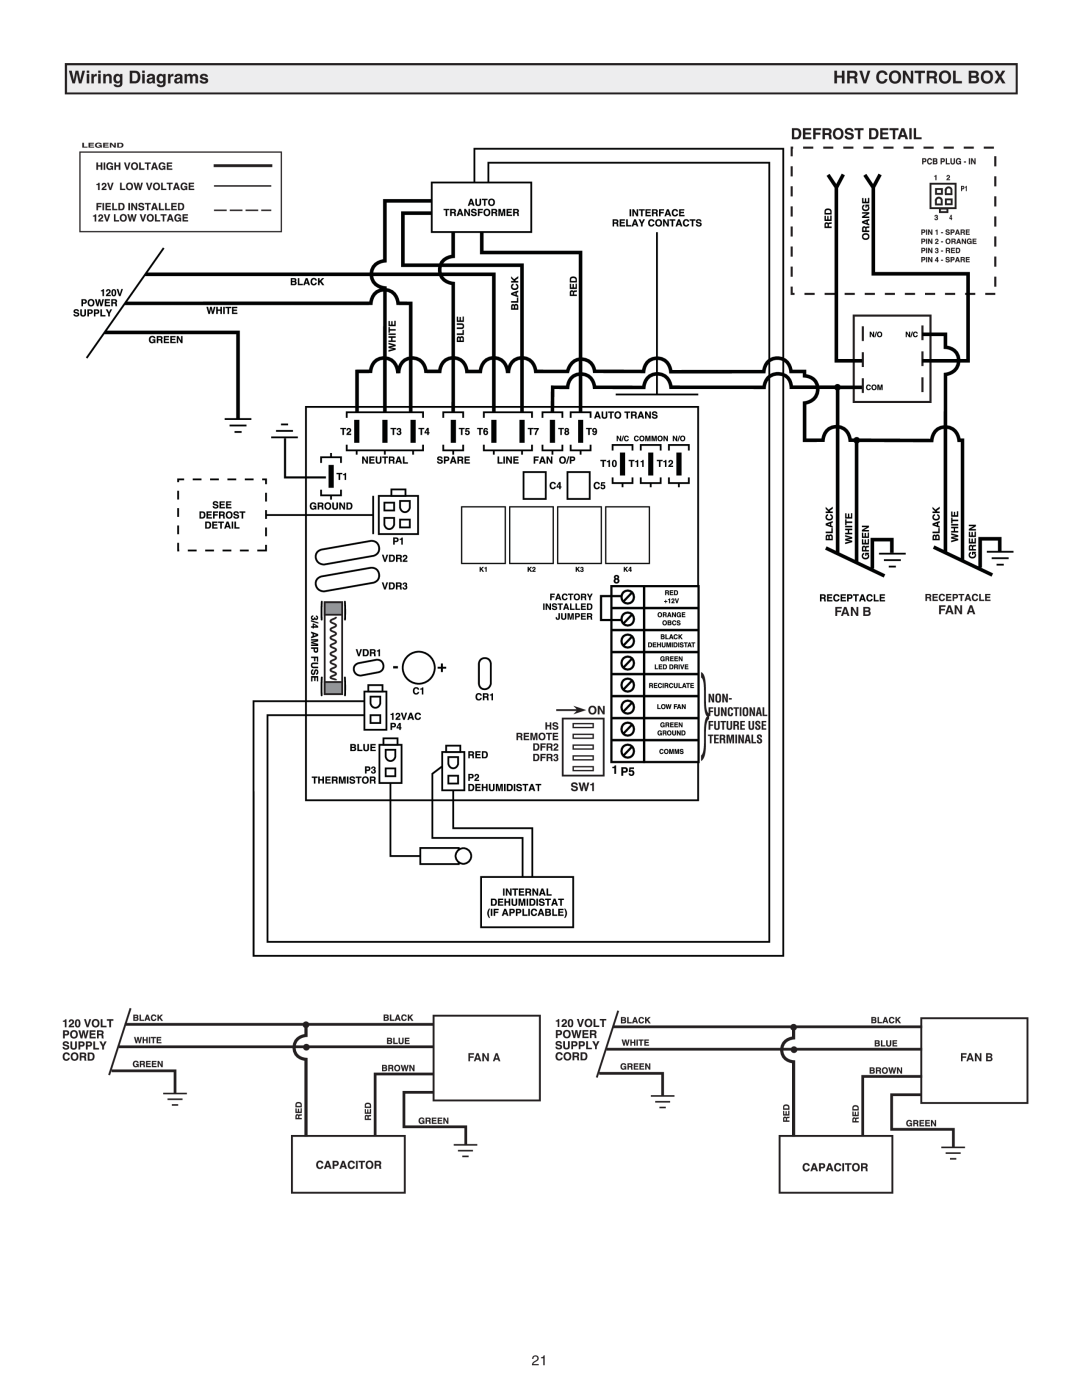 Lifebreath 120ERV, RNC120F installation manual Wiring Diagrams, Hrv Control Box, Fan B, Fan A 